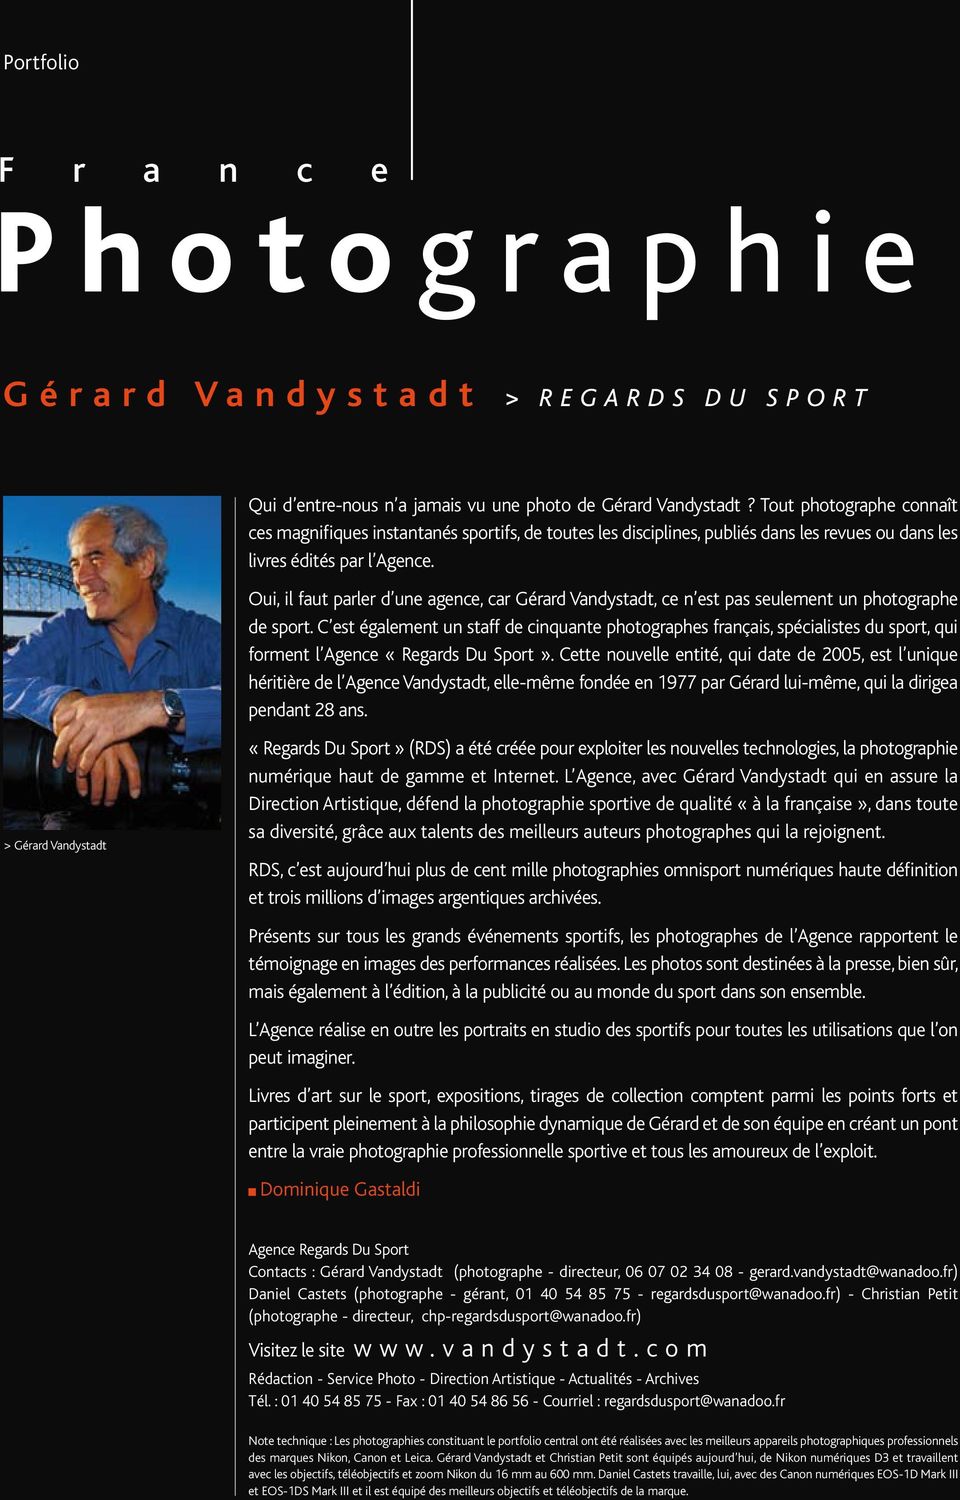 Oui, il faut parler d une agence, car Gérard Vandystadt, ce n est pas seulement un photographe de sport.